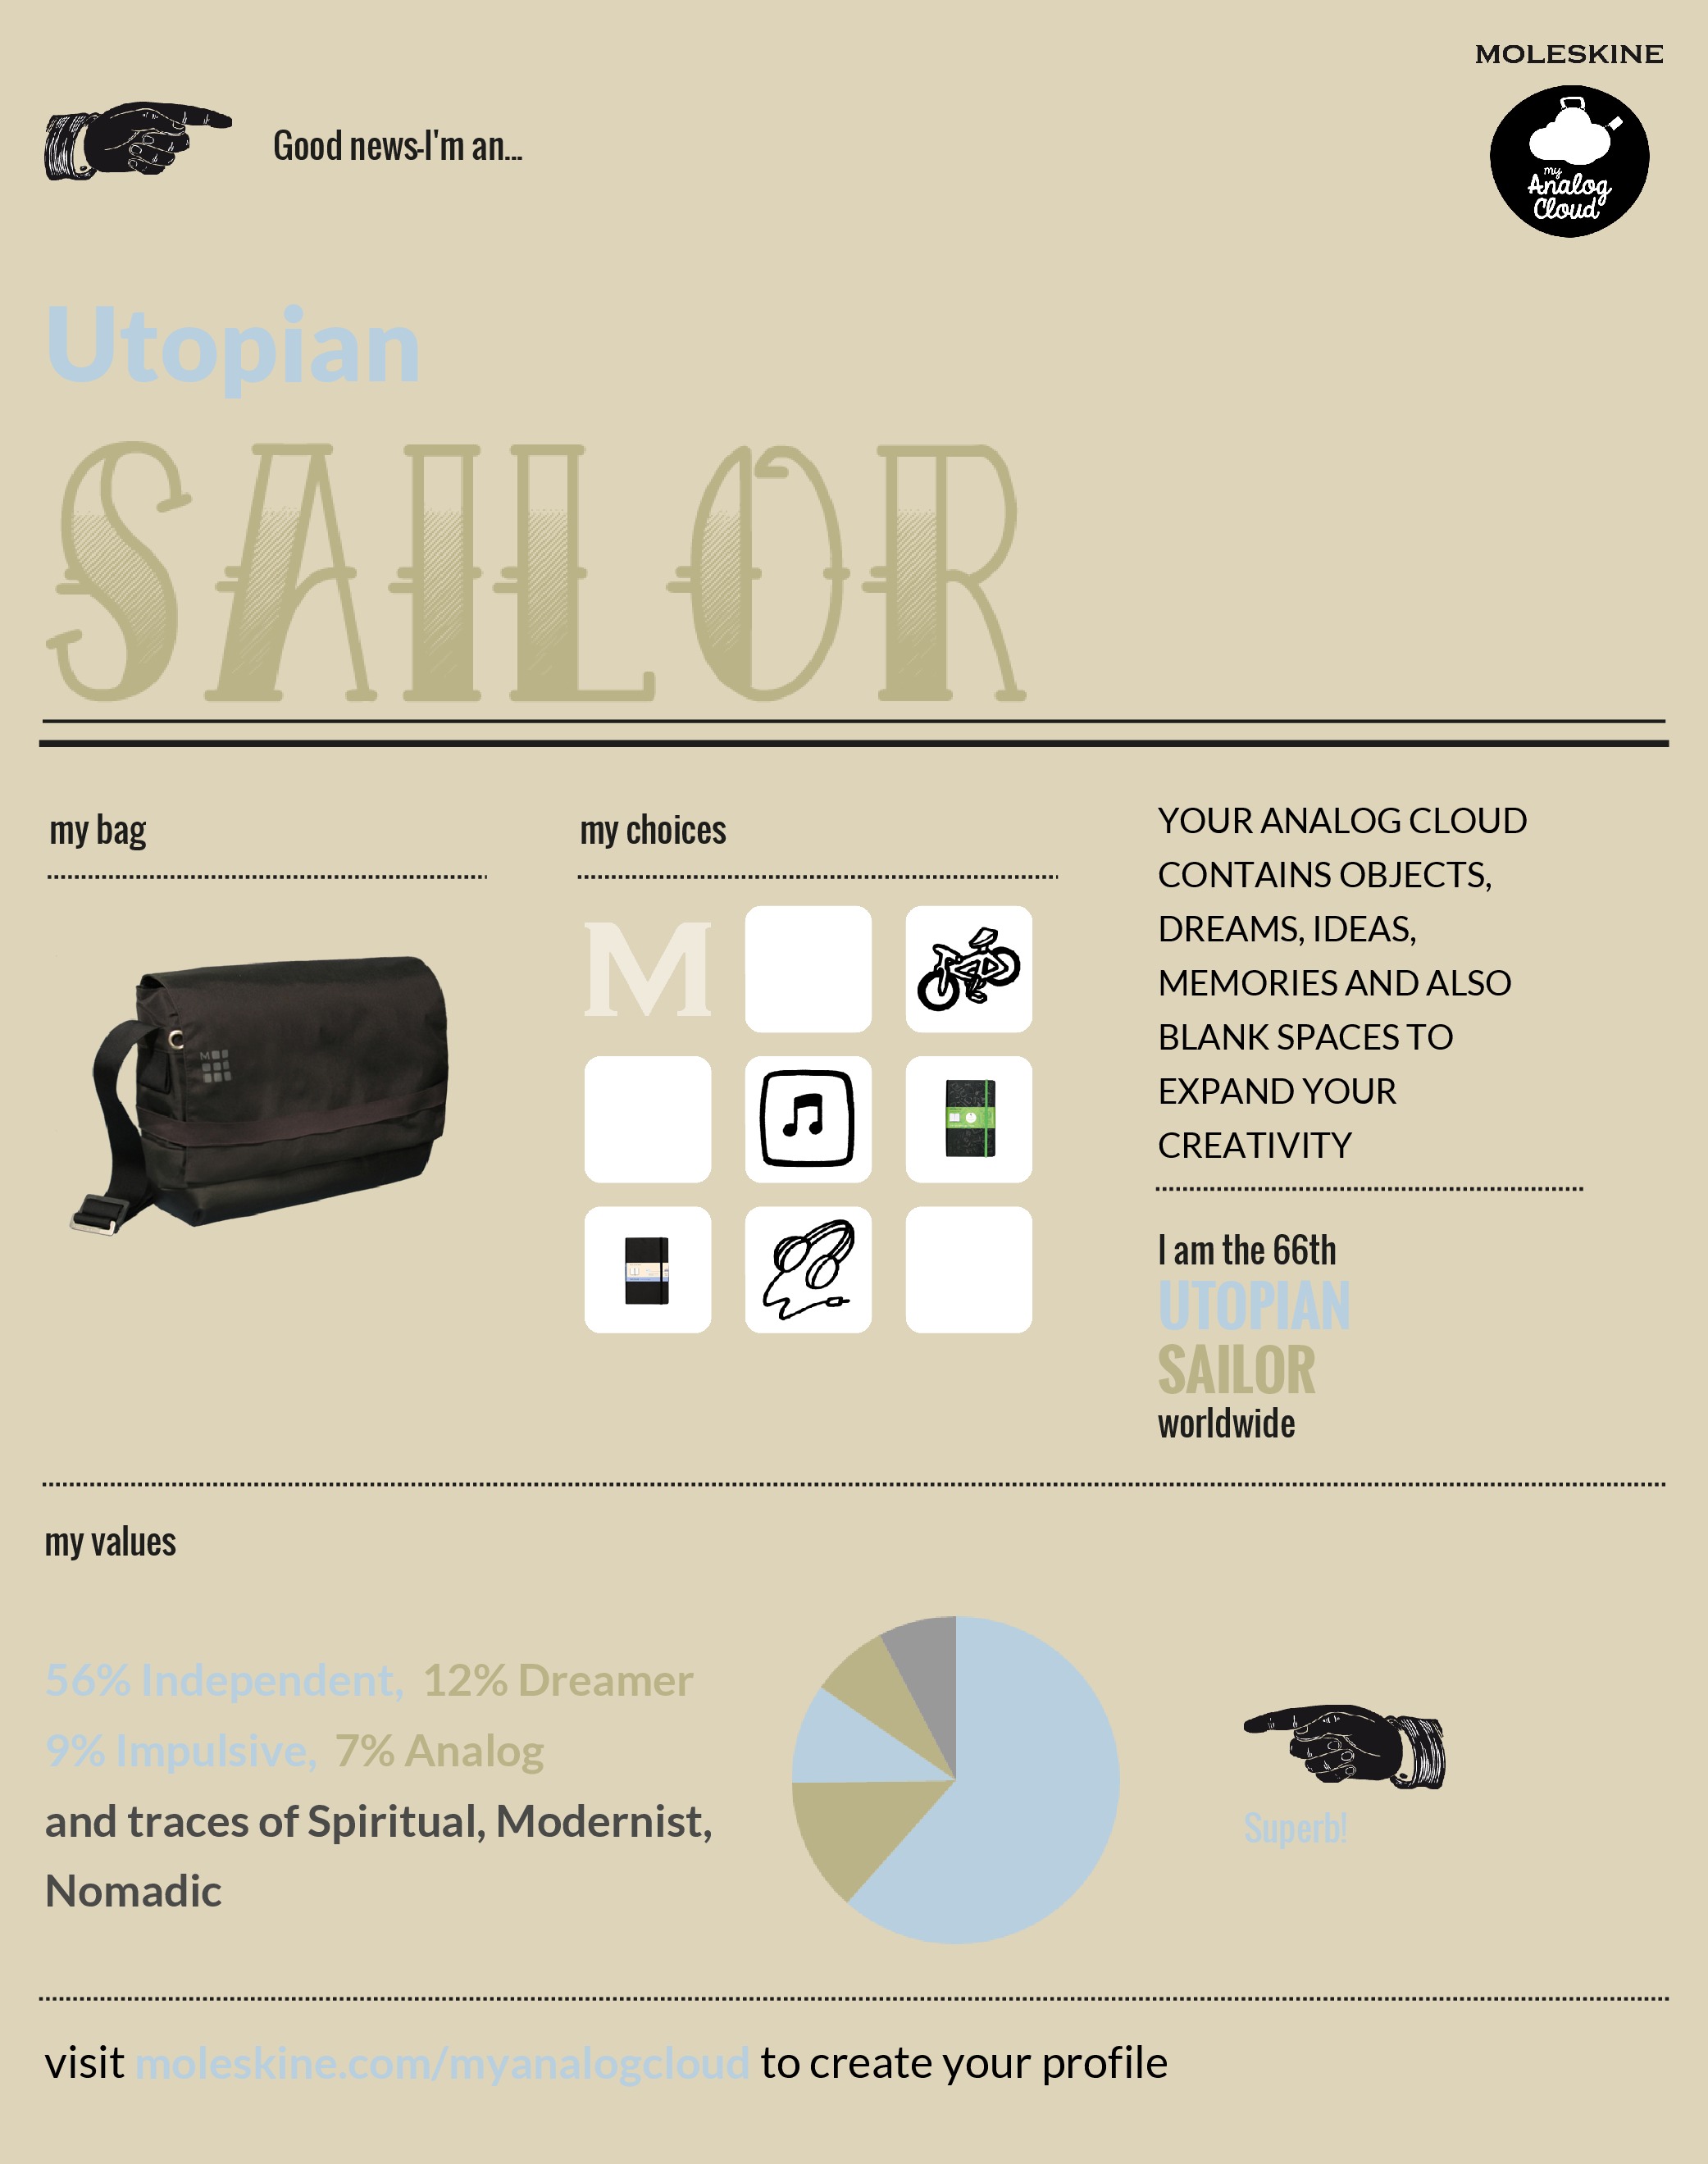 A sailor